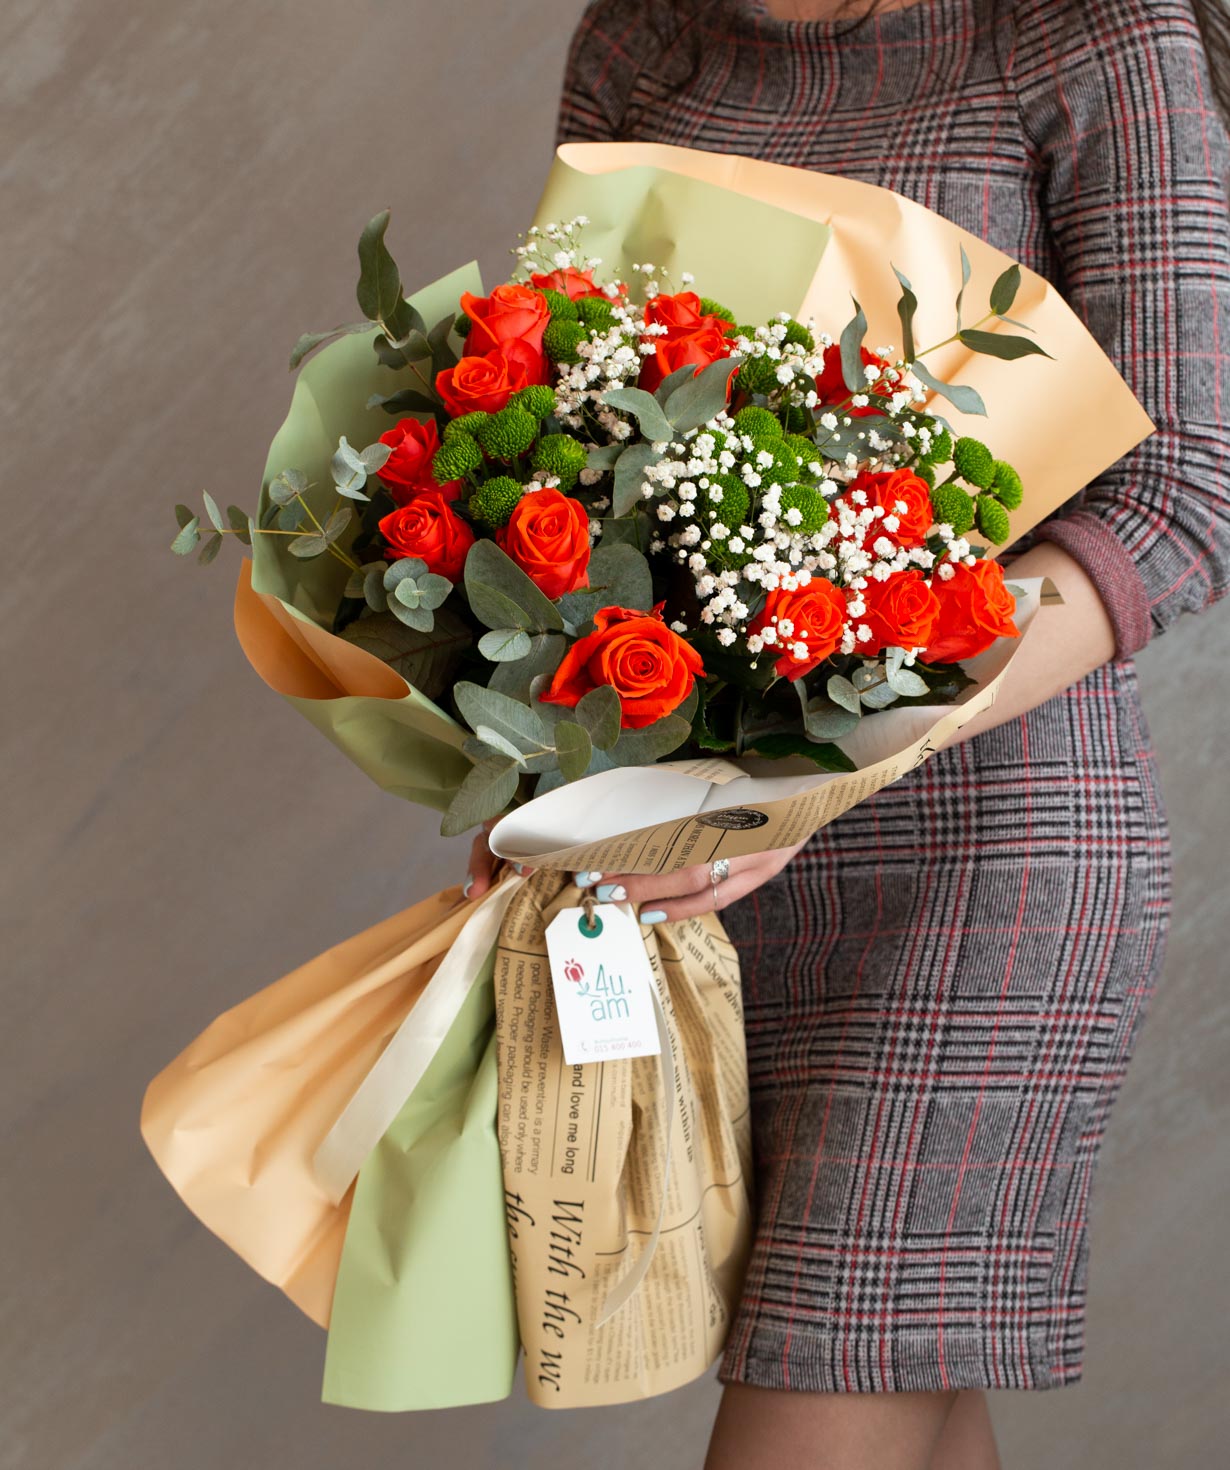 Ծաղկեփունջ «Լիդա» վարդերով, քրիզանթեմներով և գիպսաֆիլաներով